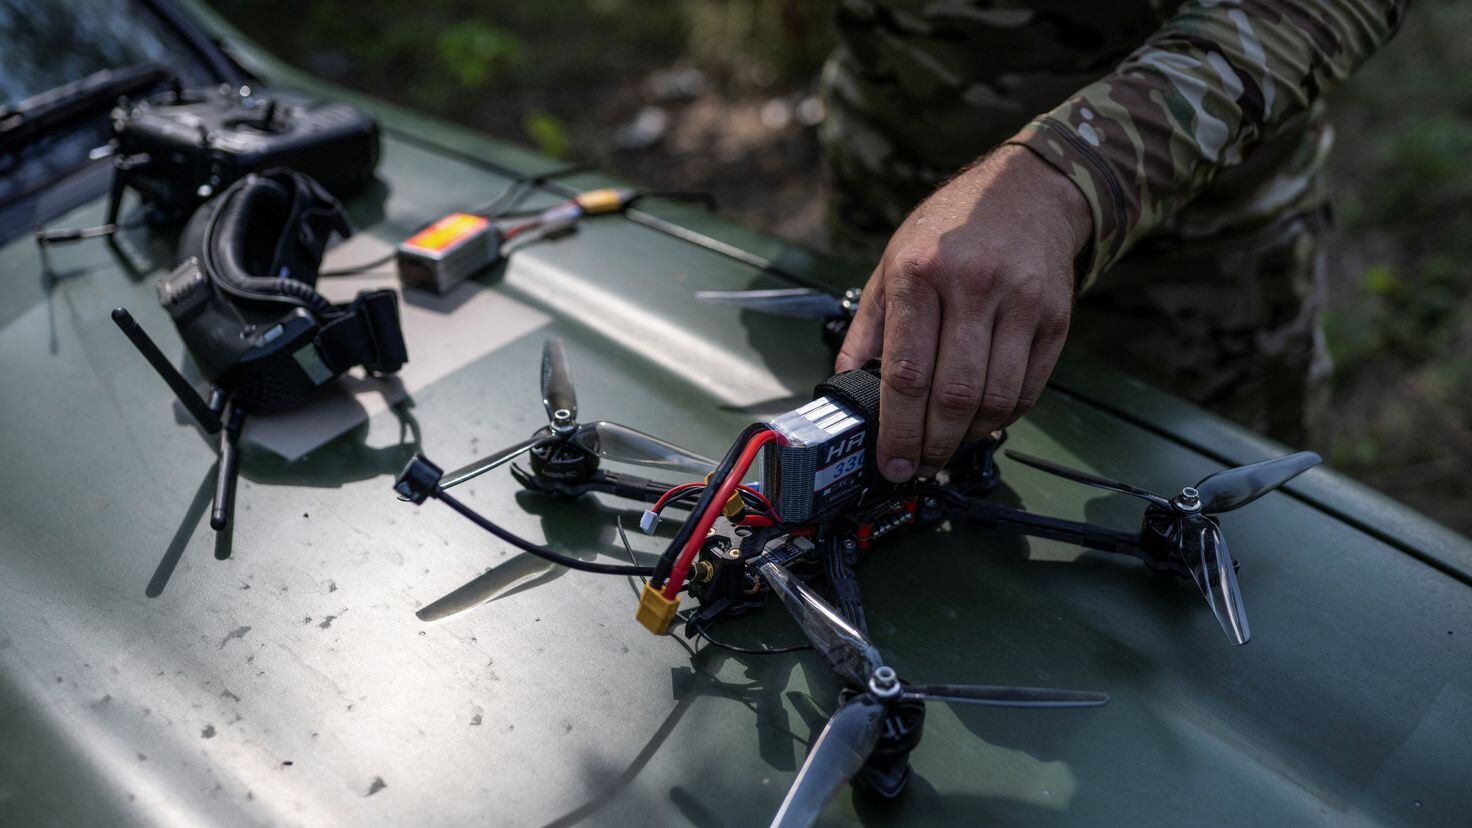 Rusia saca nuevas modificaciones de sus drones FPV de combate Ovod